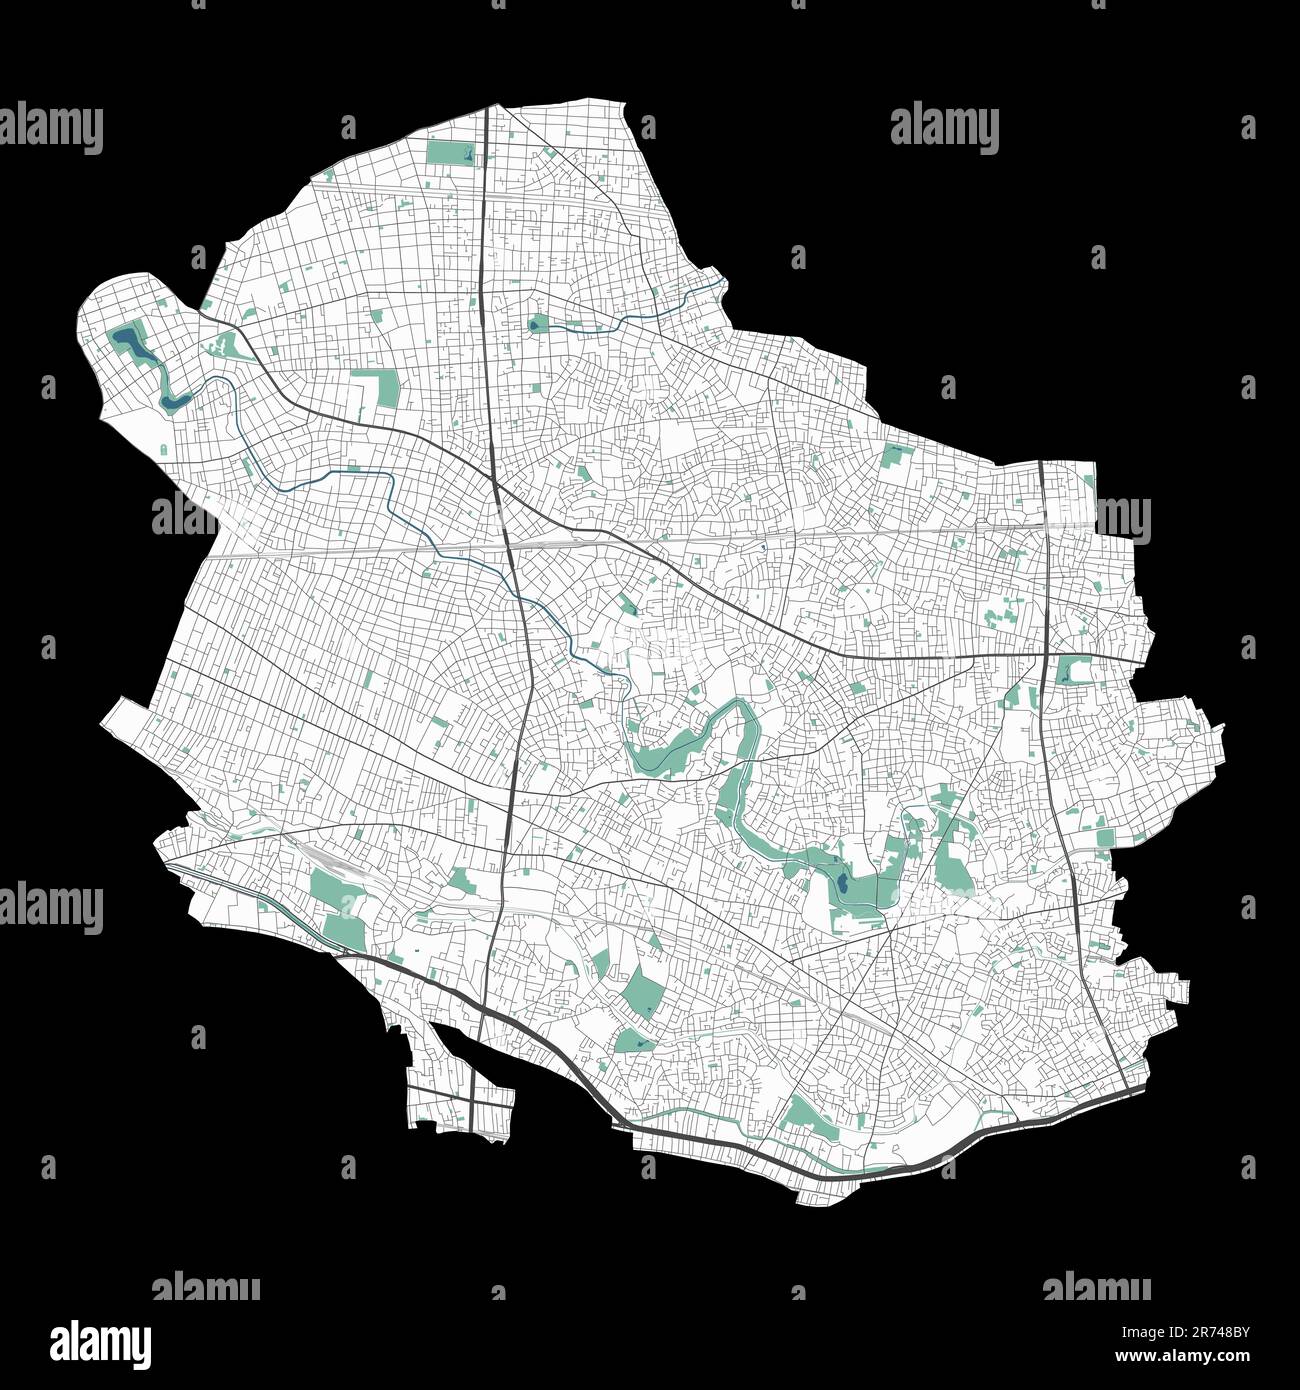 Mappa Suginami. Mappa dettagliata dell'area amministrativa della città di Suginami. Panorama urbano. Mappa stradale con autostrade, fiumi. Illustrazione vettoriale senza royalty. Illustrazione Vettoriale